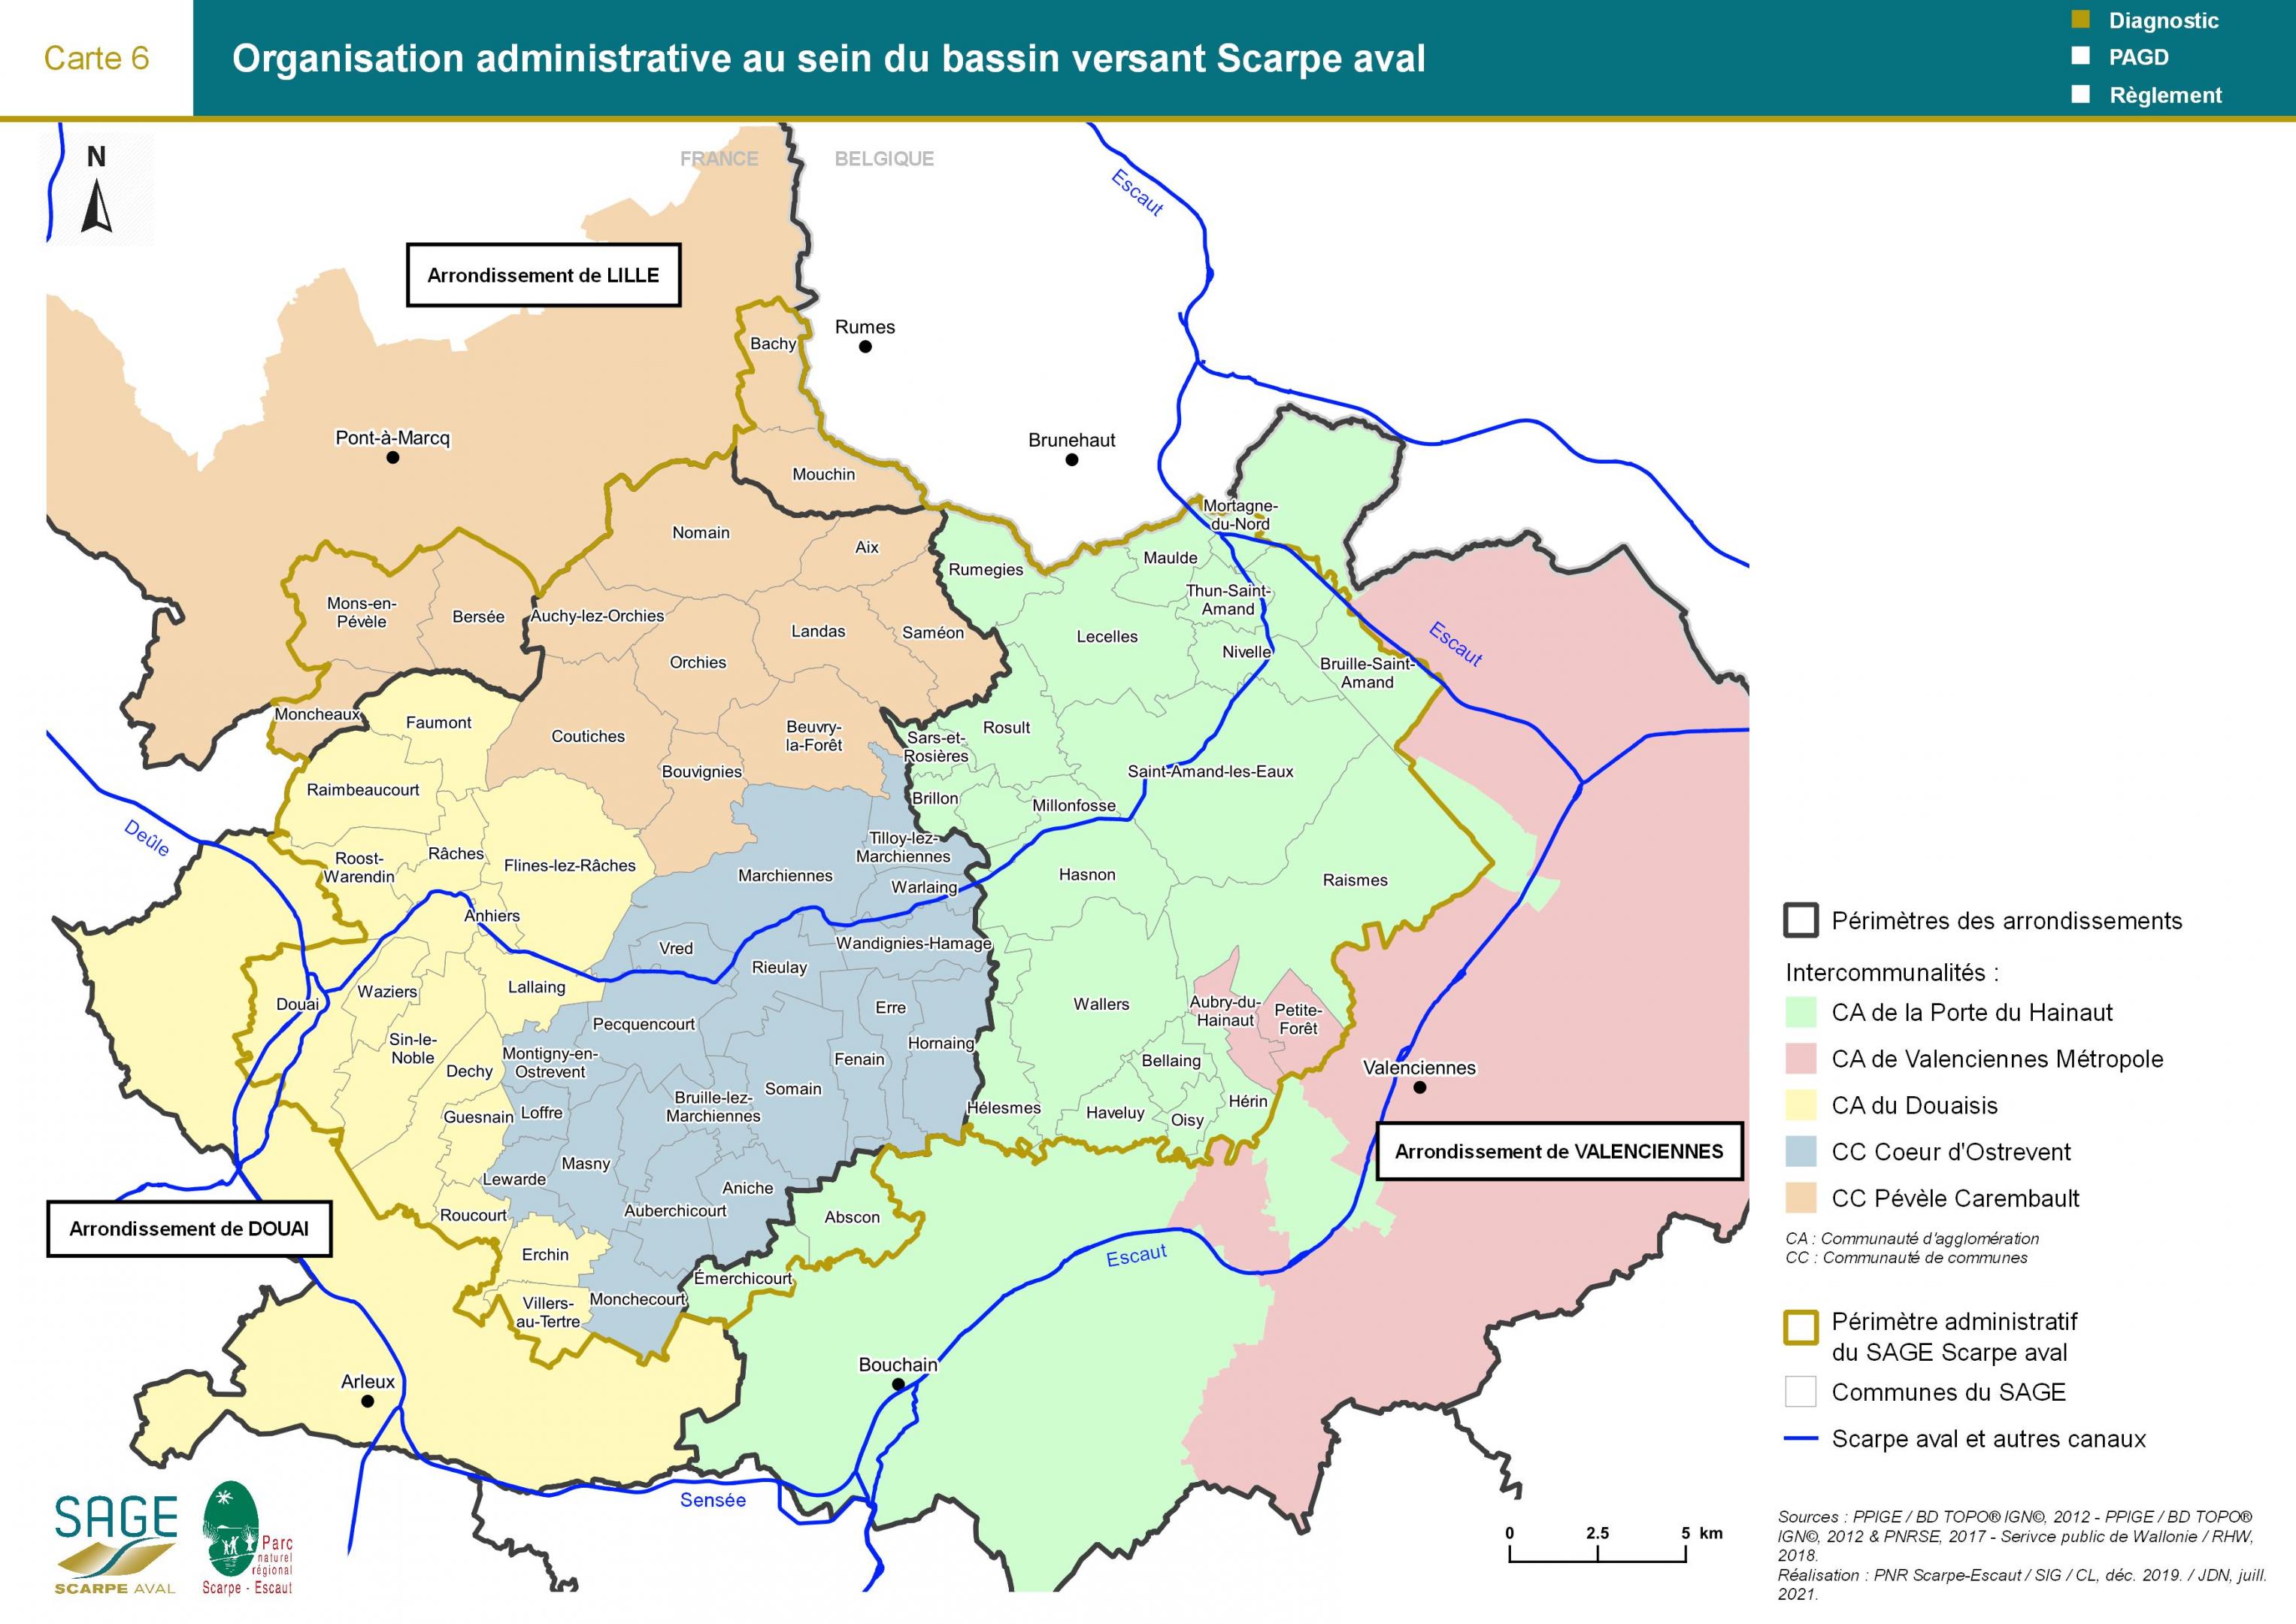 Etat des lieux - Carte 6 : Organisation administrative au sein du bassin versant Scarpe aval